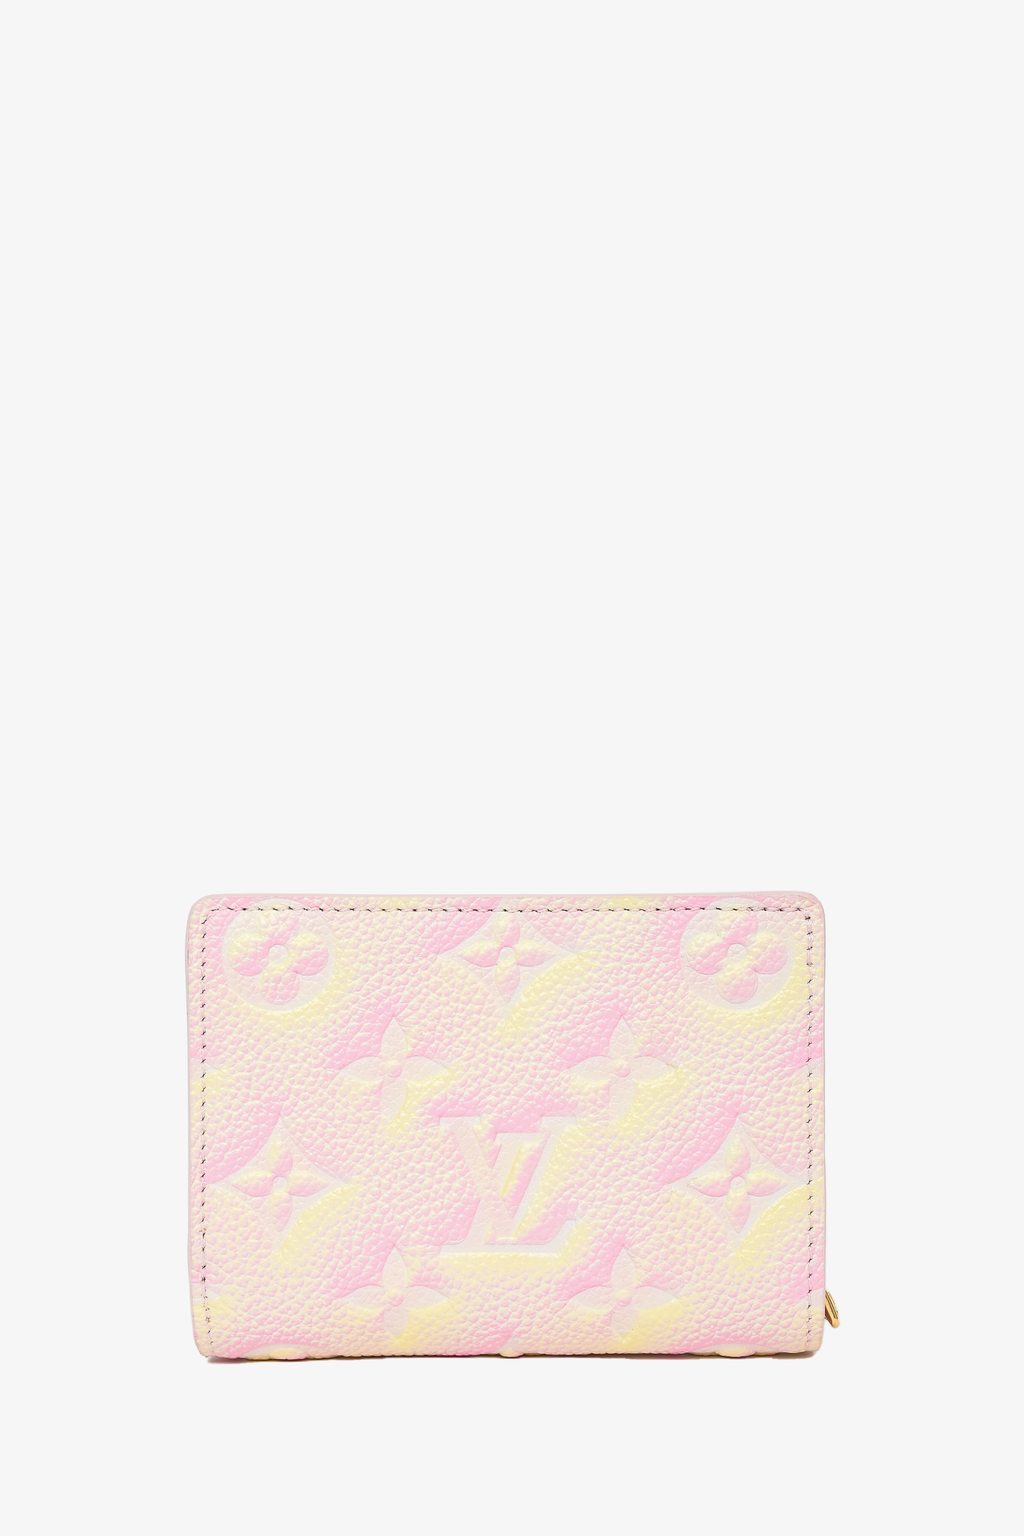 Louis Vuitton Pink Empreinte Leather 'Stardust Clea' Wallet – Mine